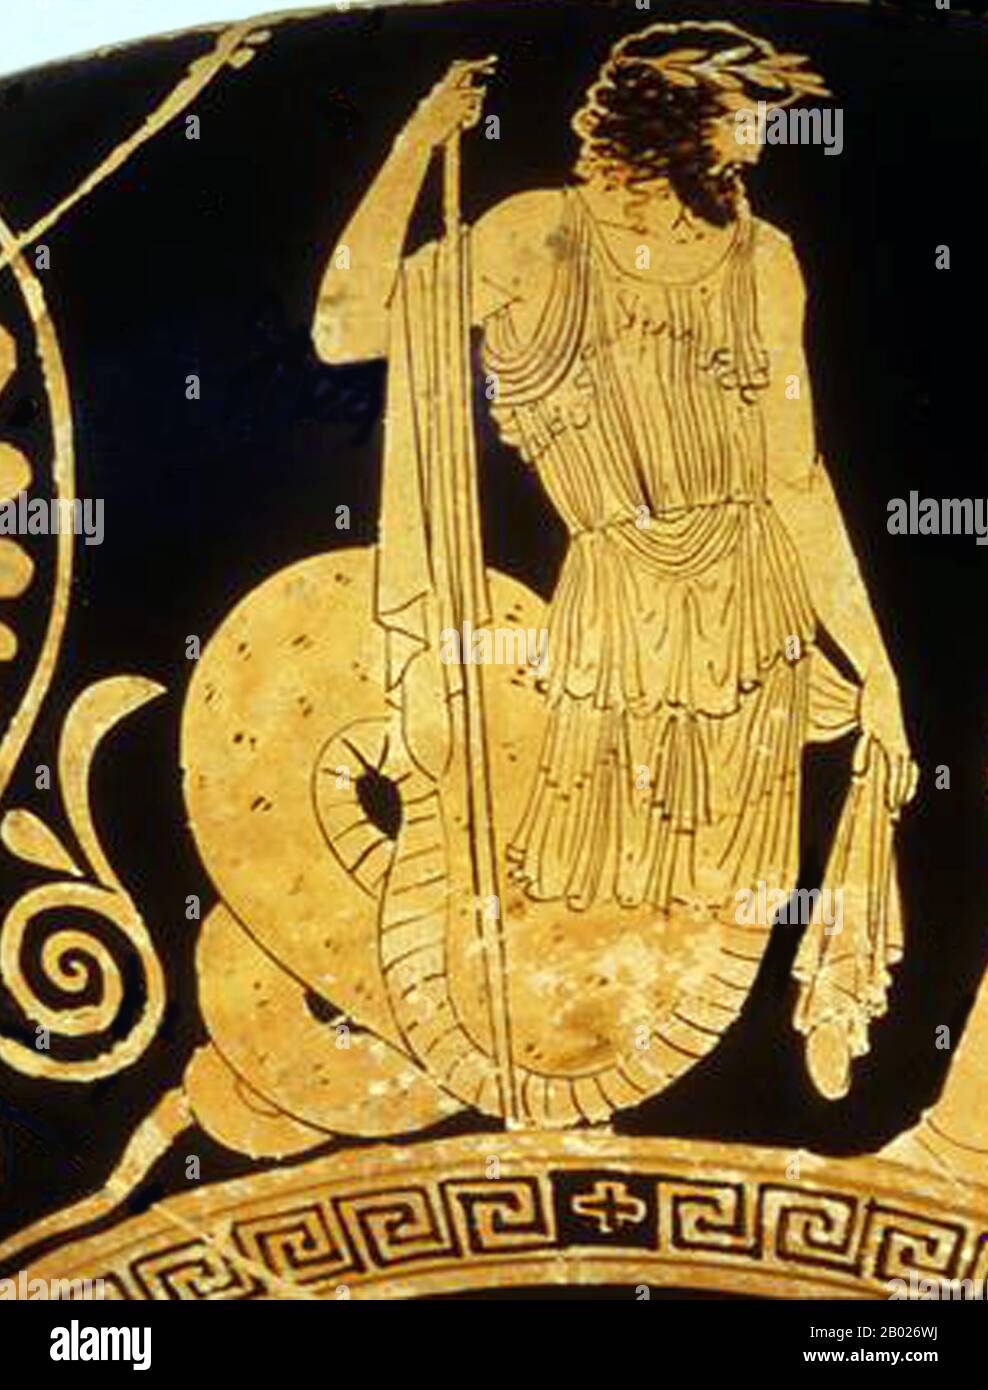 Cecrops (Grec antique: Κέκροψ, Kékrops; gen.: Κέκροπος) était un roi mythique d'Athènes qui aurait régné pendant cinquante-six ans. Le nom n'est pas d'origine grecque selon Strabo, ou il pourrait signifier "face avec une queue": On dit que, né de la terre elle-même, il avait sa moitié supérieure en forme d'homme et la moitié inférieure en forme de serpent ou de queue de poisson. Il était le fondateur et le premier roi d'Athènes lui-même, bien qu'il ait été précédé dans la région par le roi Actaeus d'Attica, né sur terre. Banque D'Images